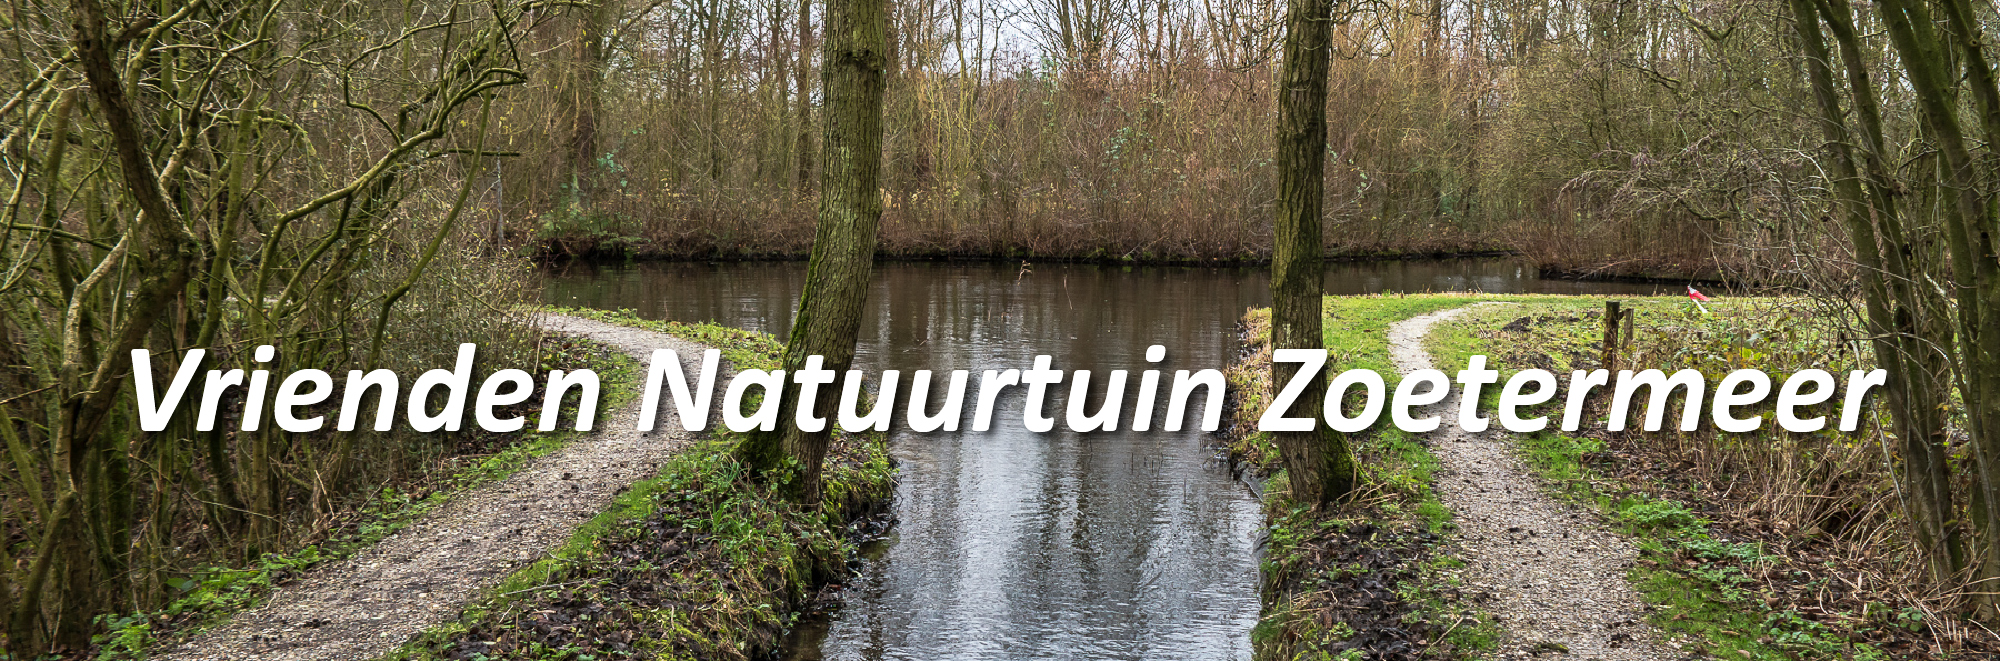 Vrienden Natuurtuin Zoetermeer